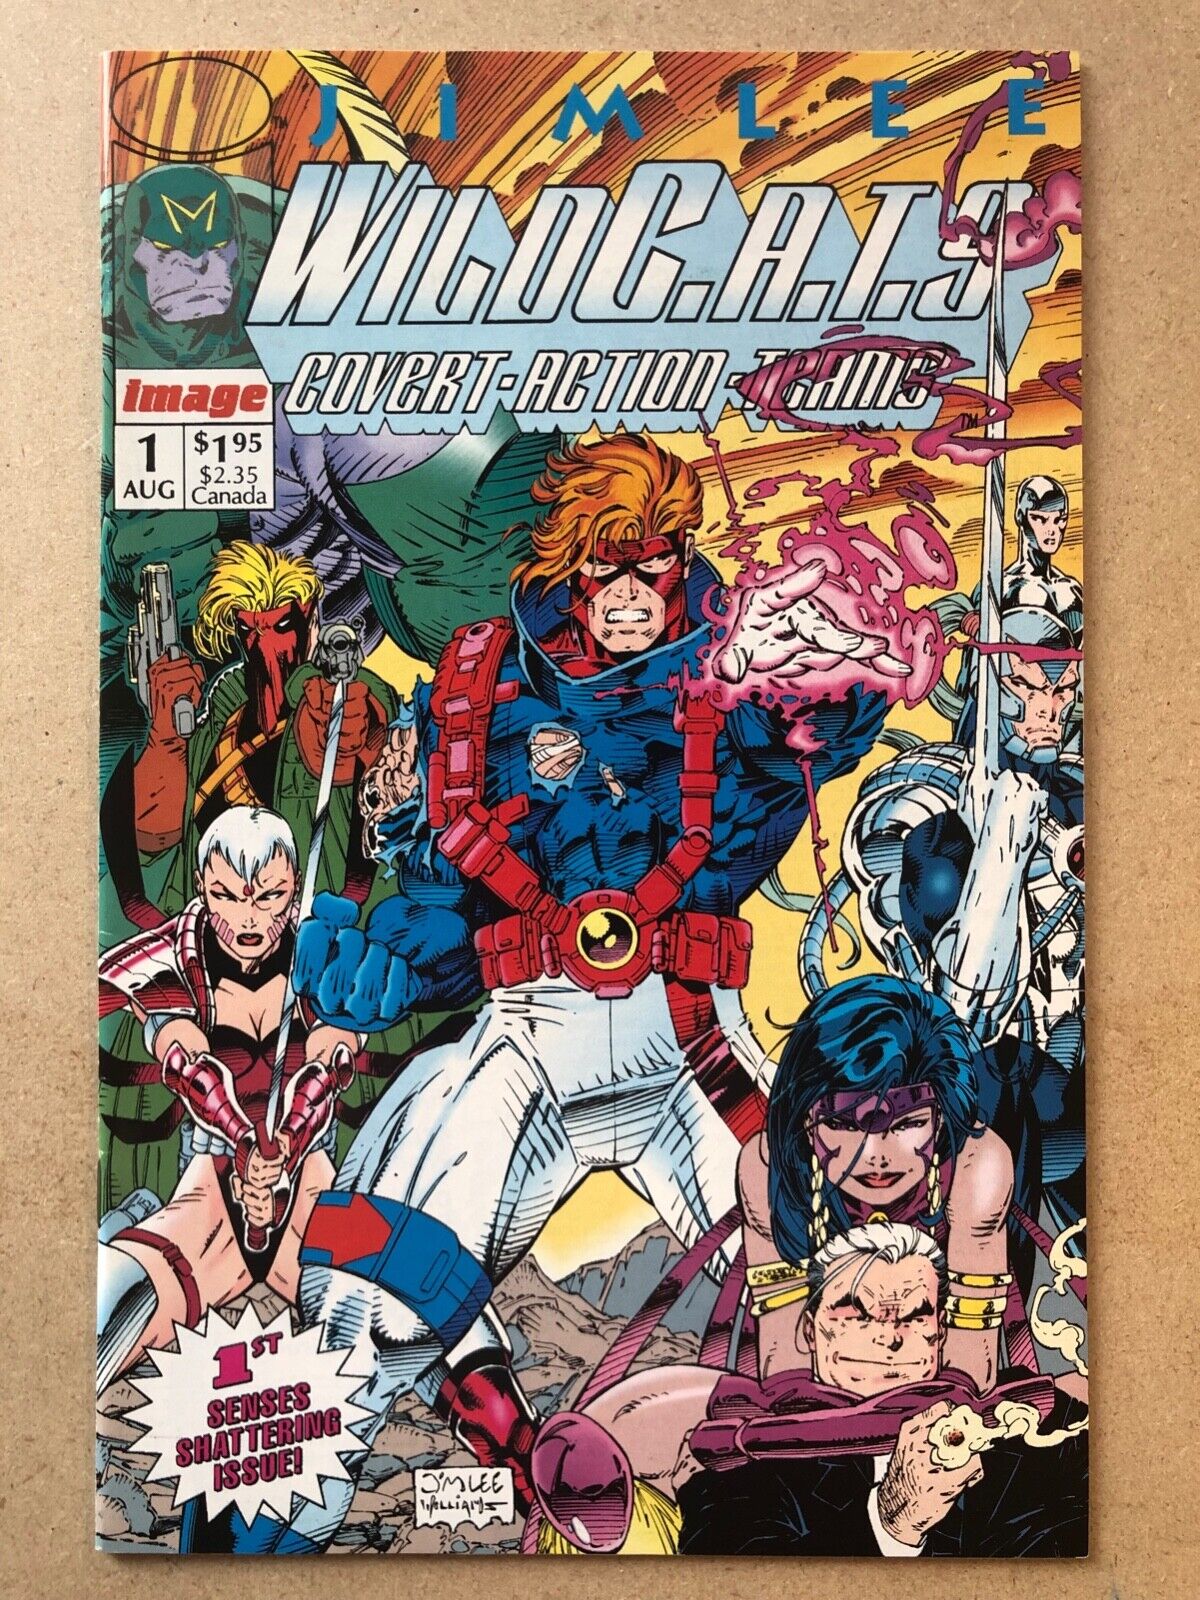 Lot of 6 WildC.A.T.S. #1-4, 7, 10 1992 Jim Lee High Grade Image Comics